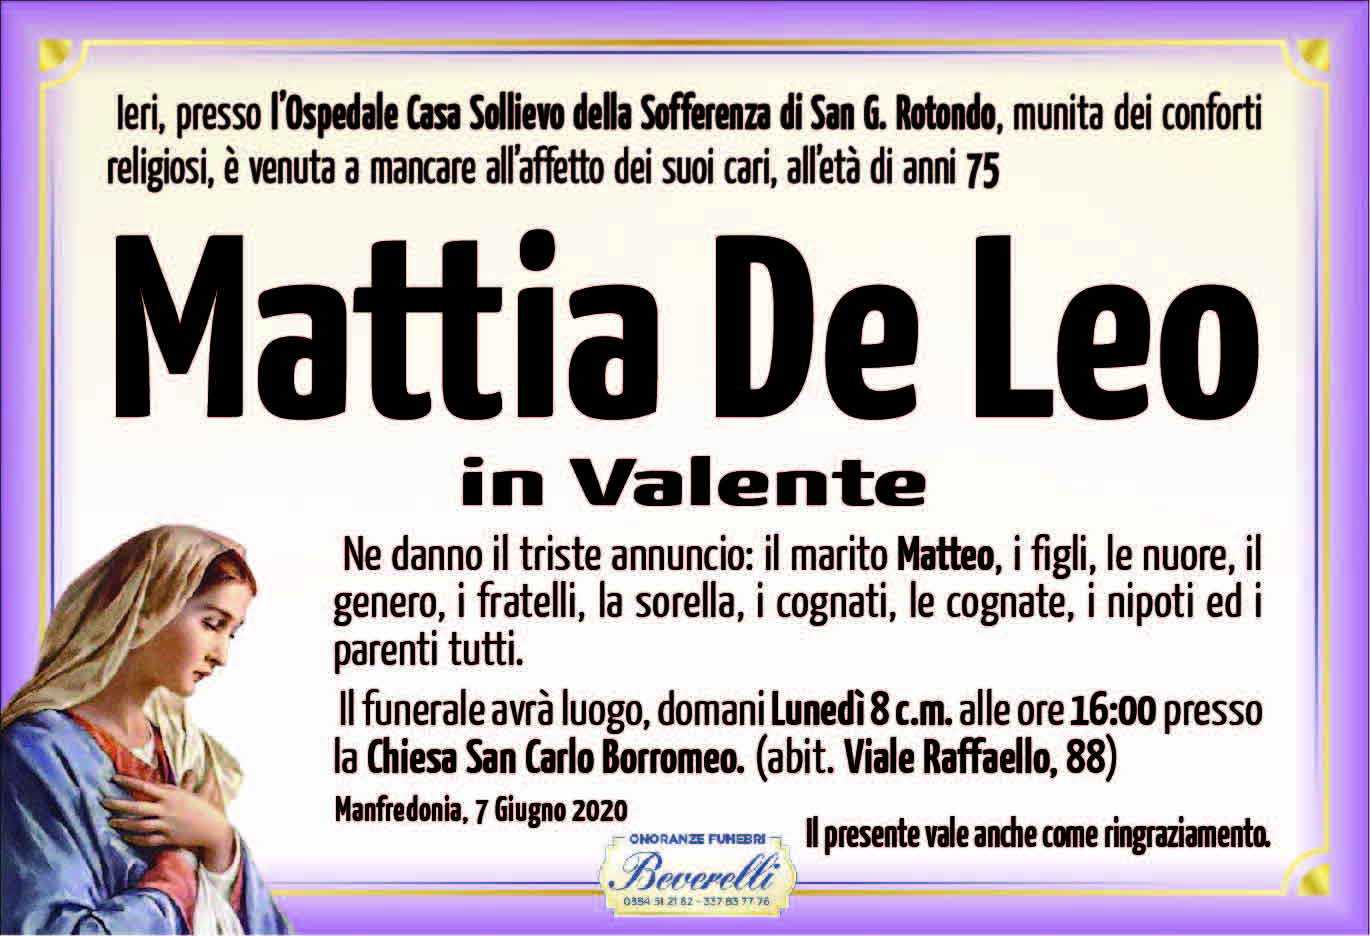 Mattia De Leo